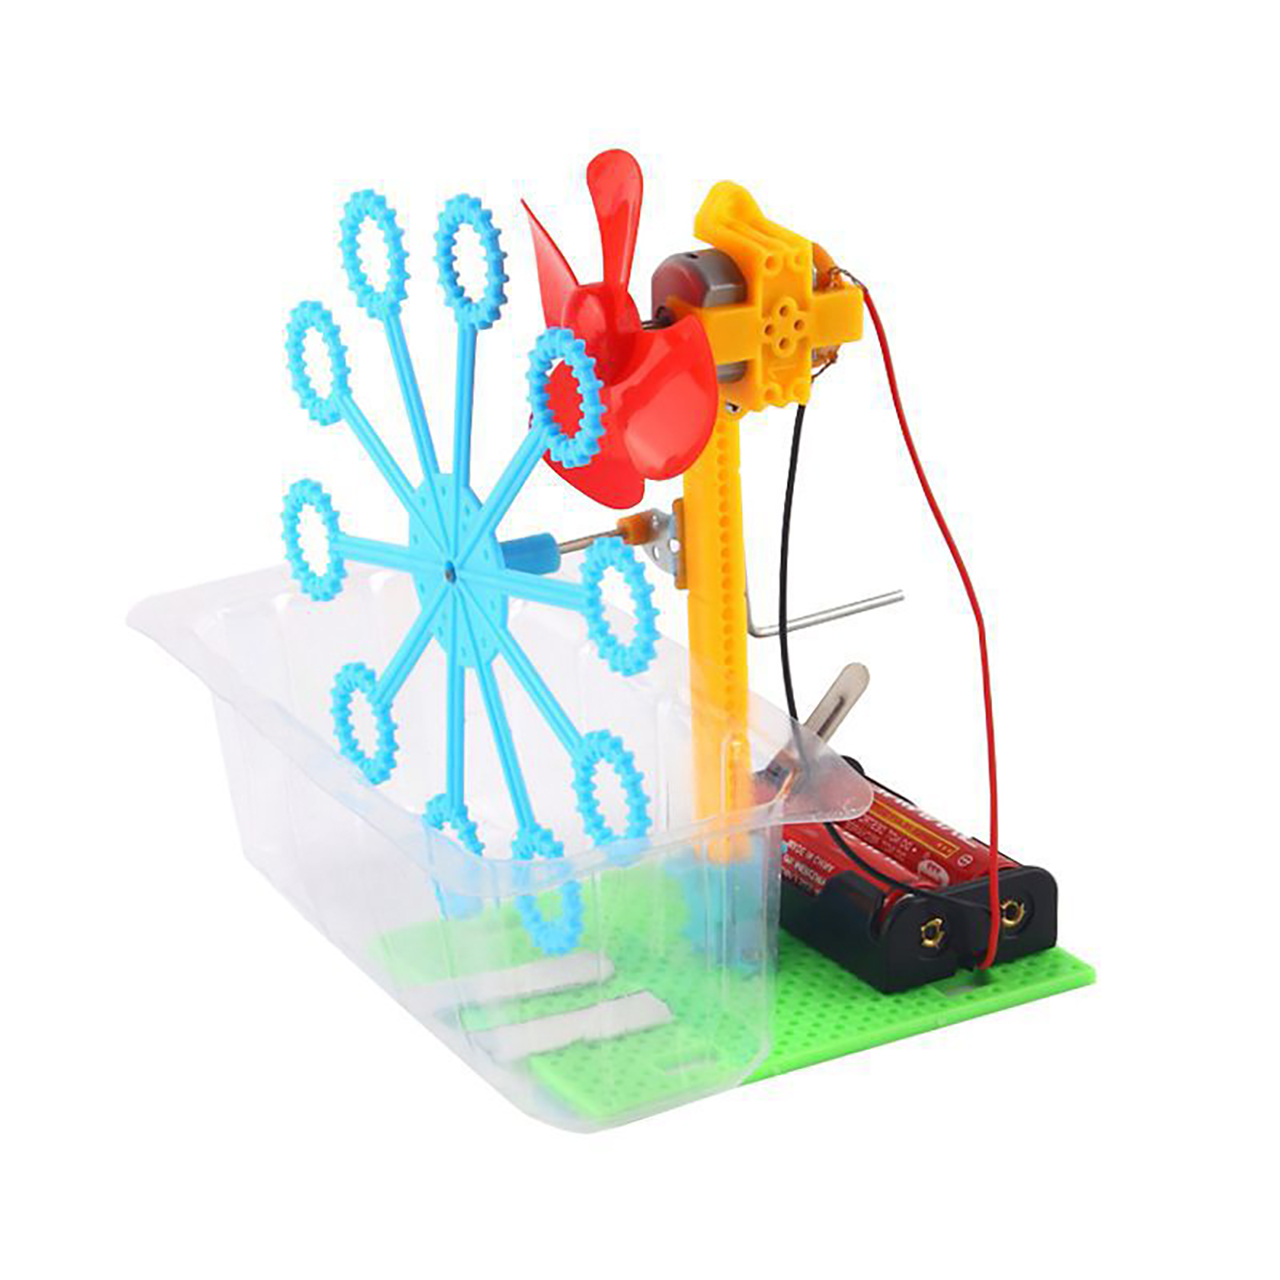 Đồ chơi trẻ em S15 thông minh sáng tạo STEM (STEAM) mô hình lắp ghép đồ chơi thổi bong bóng xà phòng